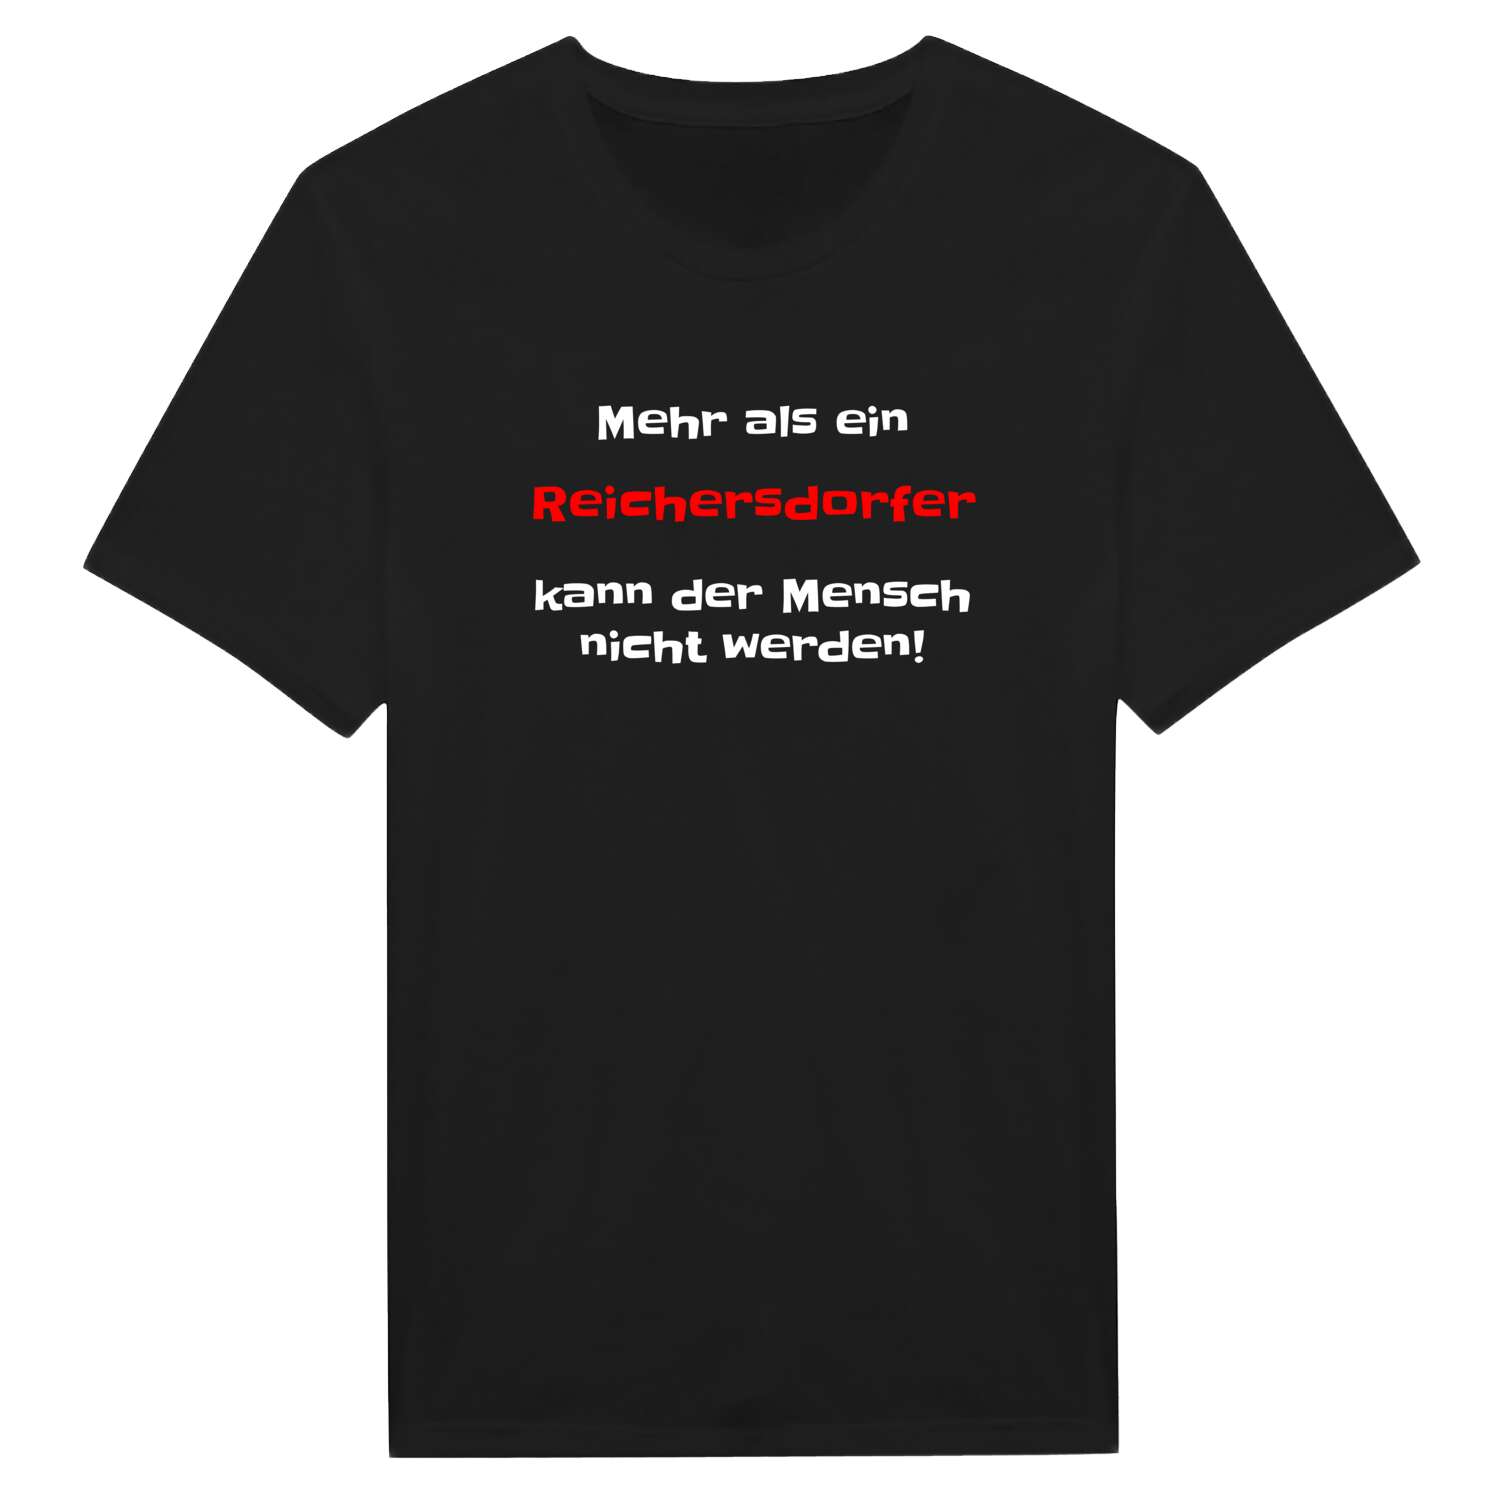 Reichersdorf T-Shirt »Mehr als ein«